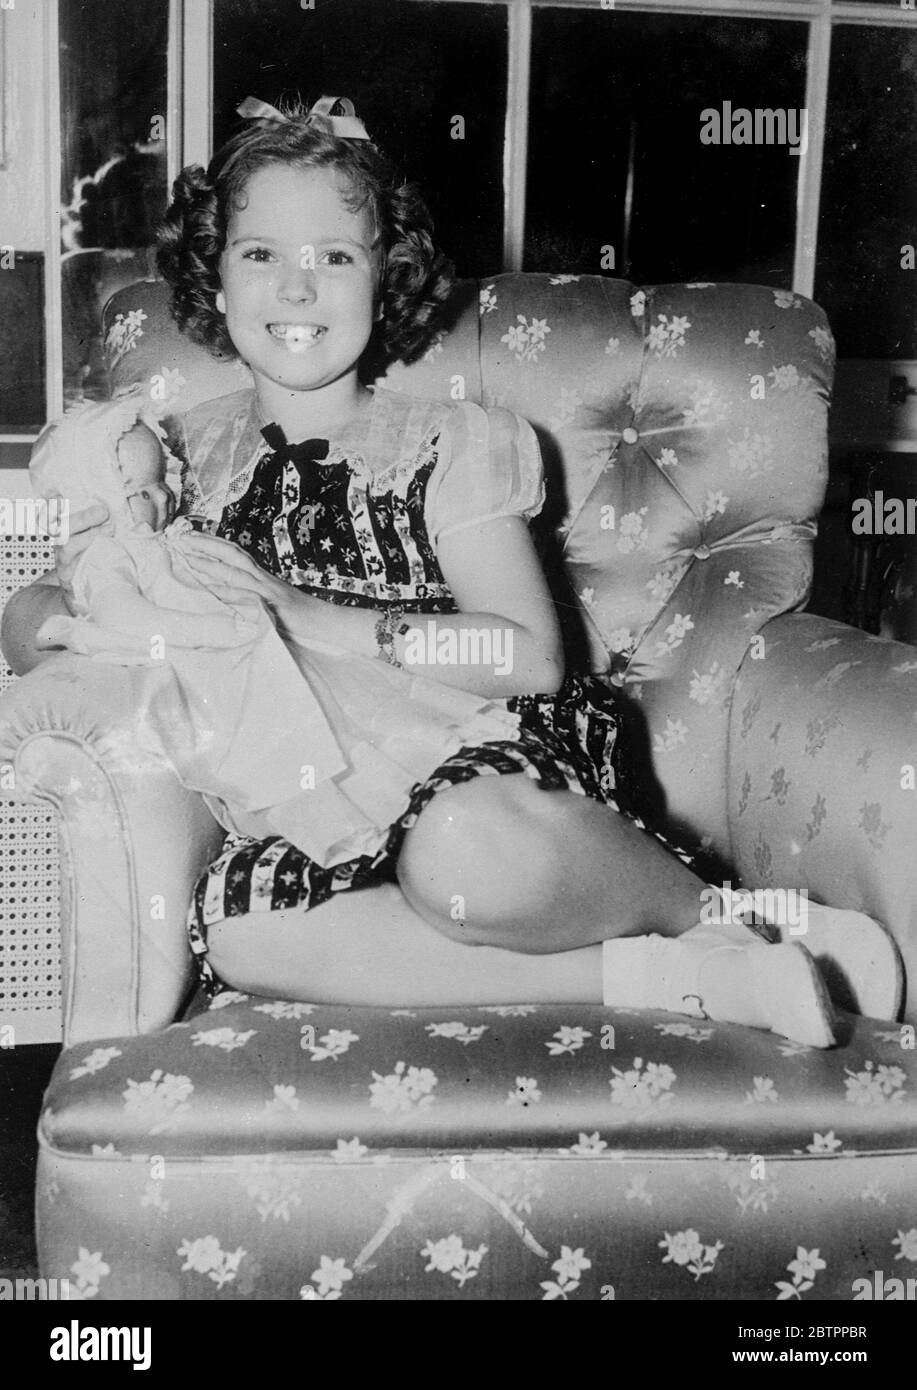 Shirley Temple visite Chicago. Shirley Temple, l'actrice du film pour enfants passe une soirée tranquille avec une poupée dans un fauteuil confortable, à son hôtel lors d'une visite à Chicago. Des arrangements provisoires auraient été faits pour que Shirley visite l'Angleterre dans un avenir proche. Banque D'Images